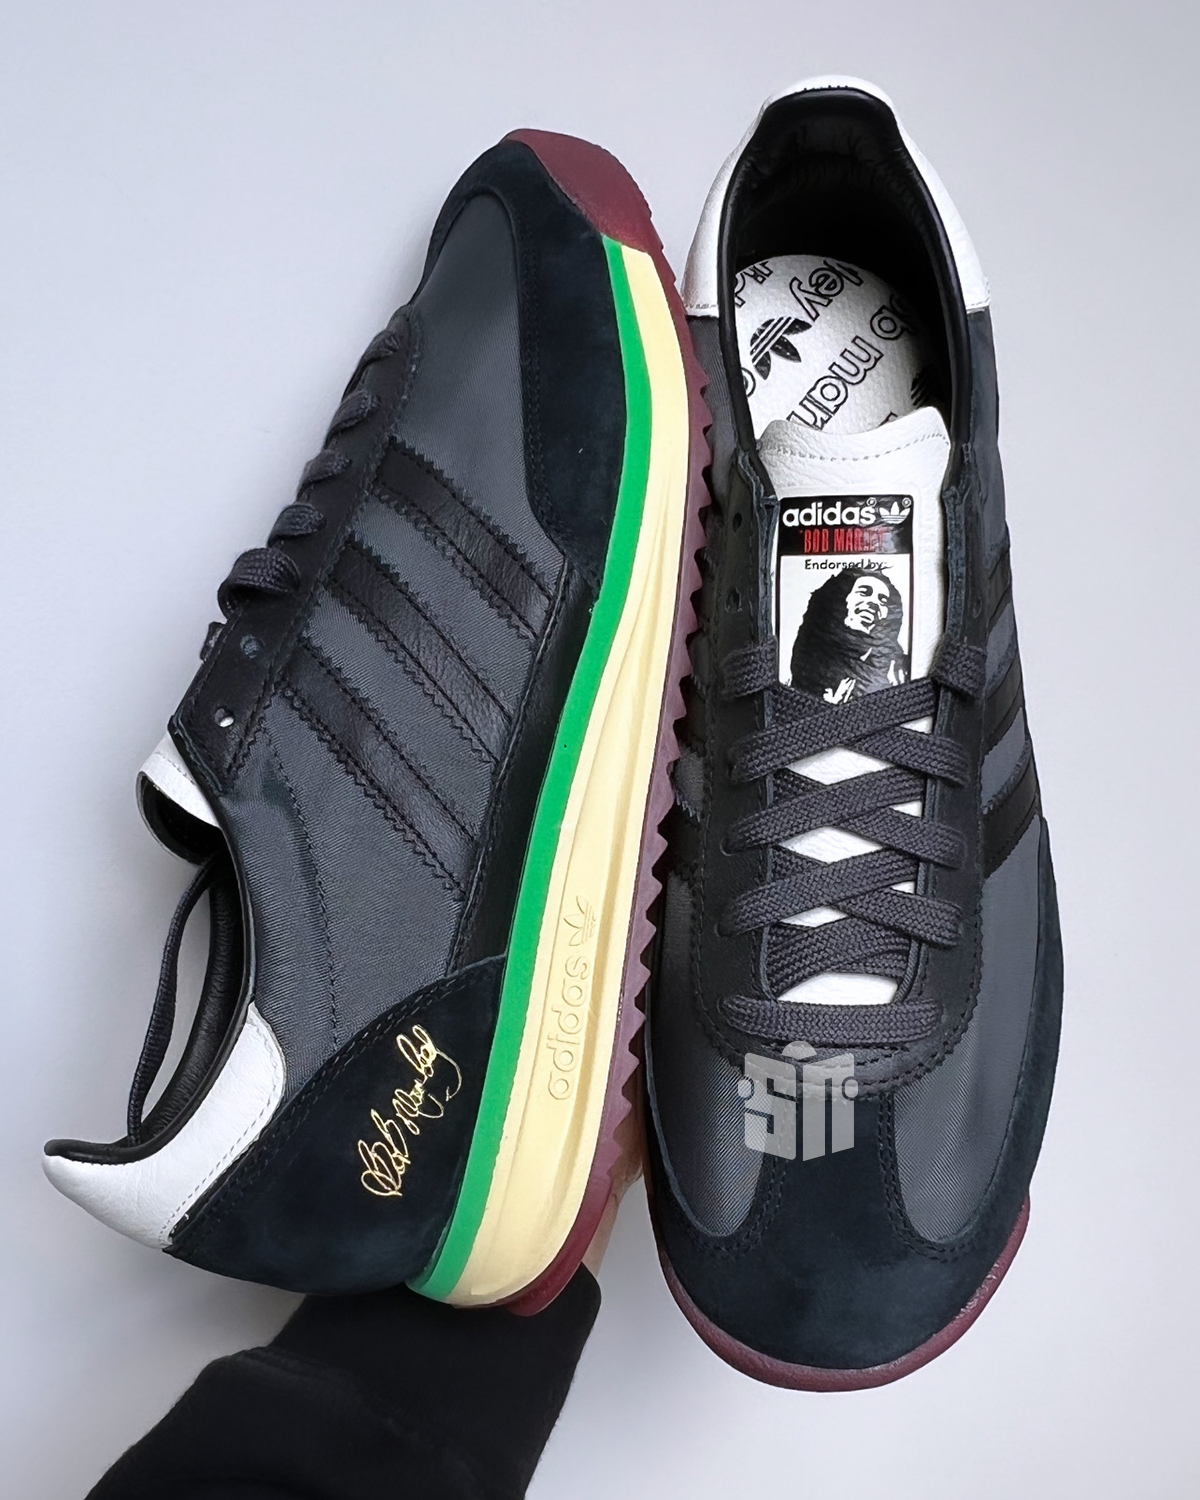 Bob Marley Adidas Sl72 Release